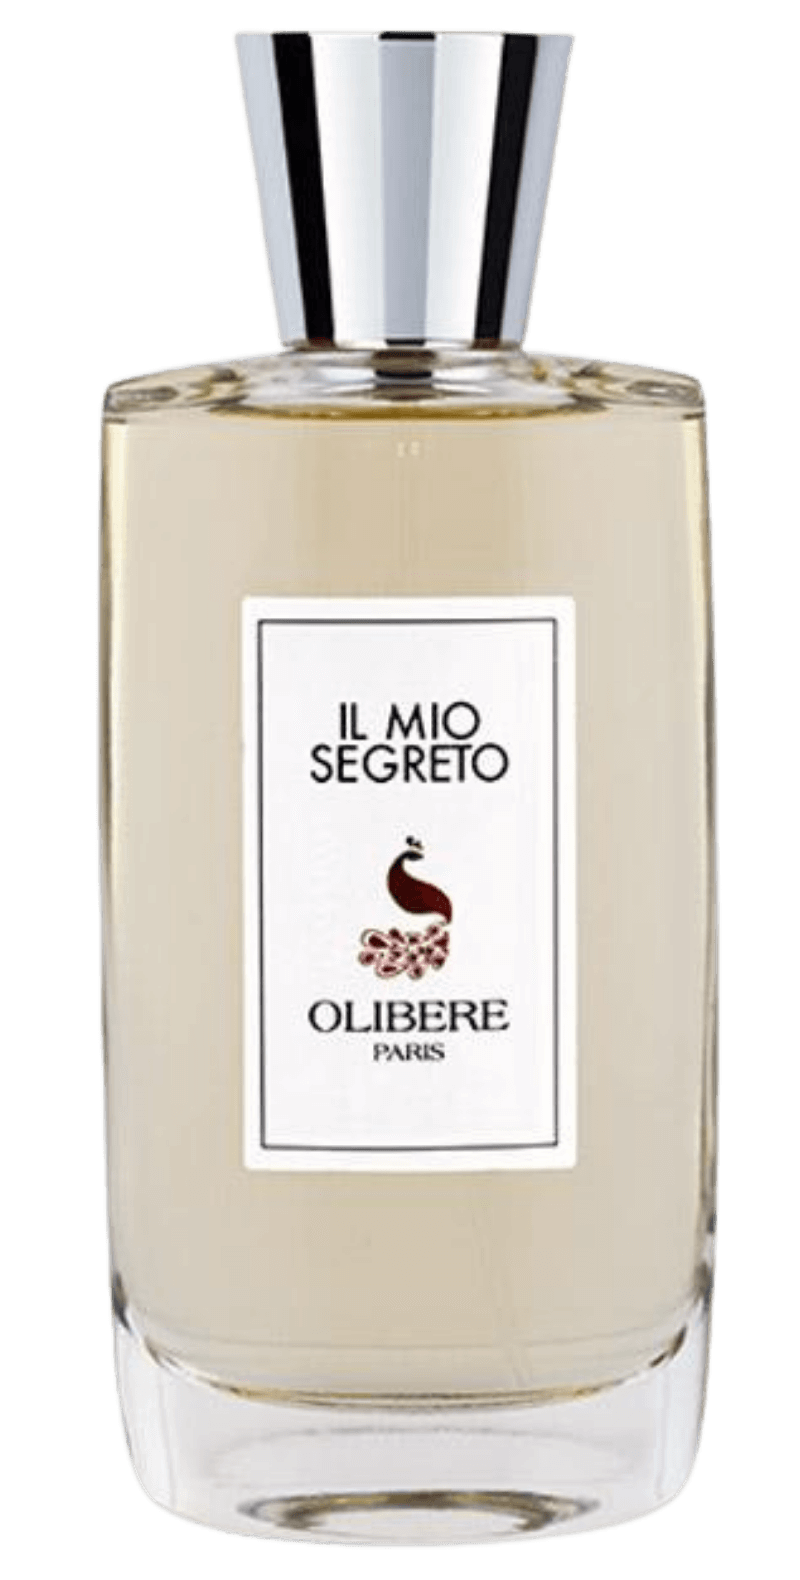 's Olibere Il Mio Segreto - Bellini's Skin and Parfumerie 